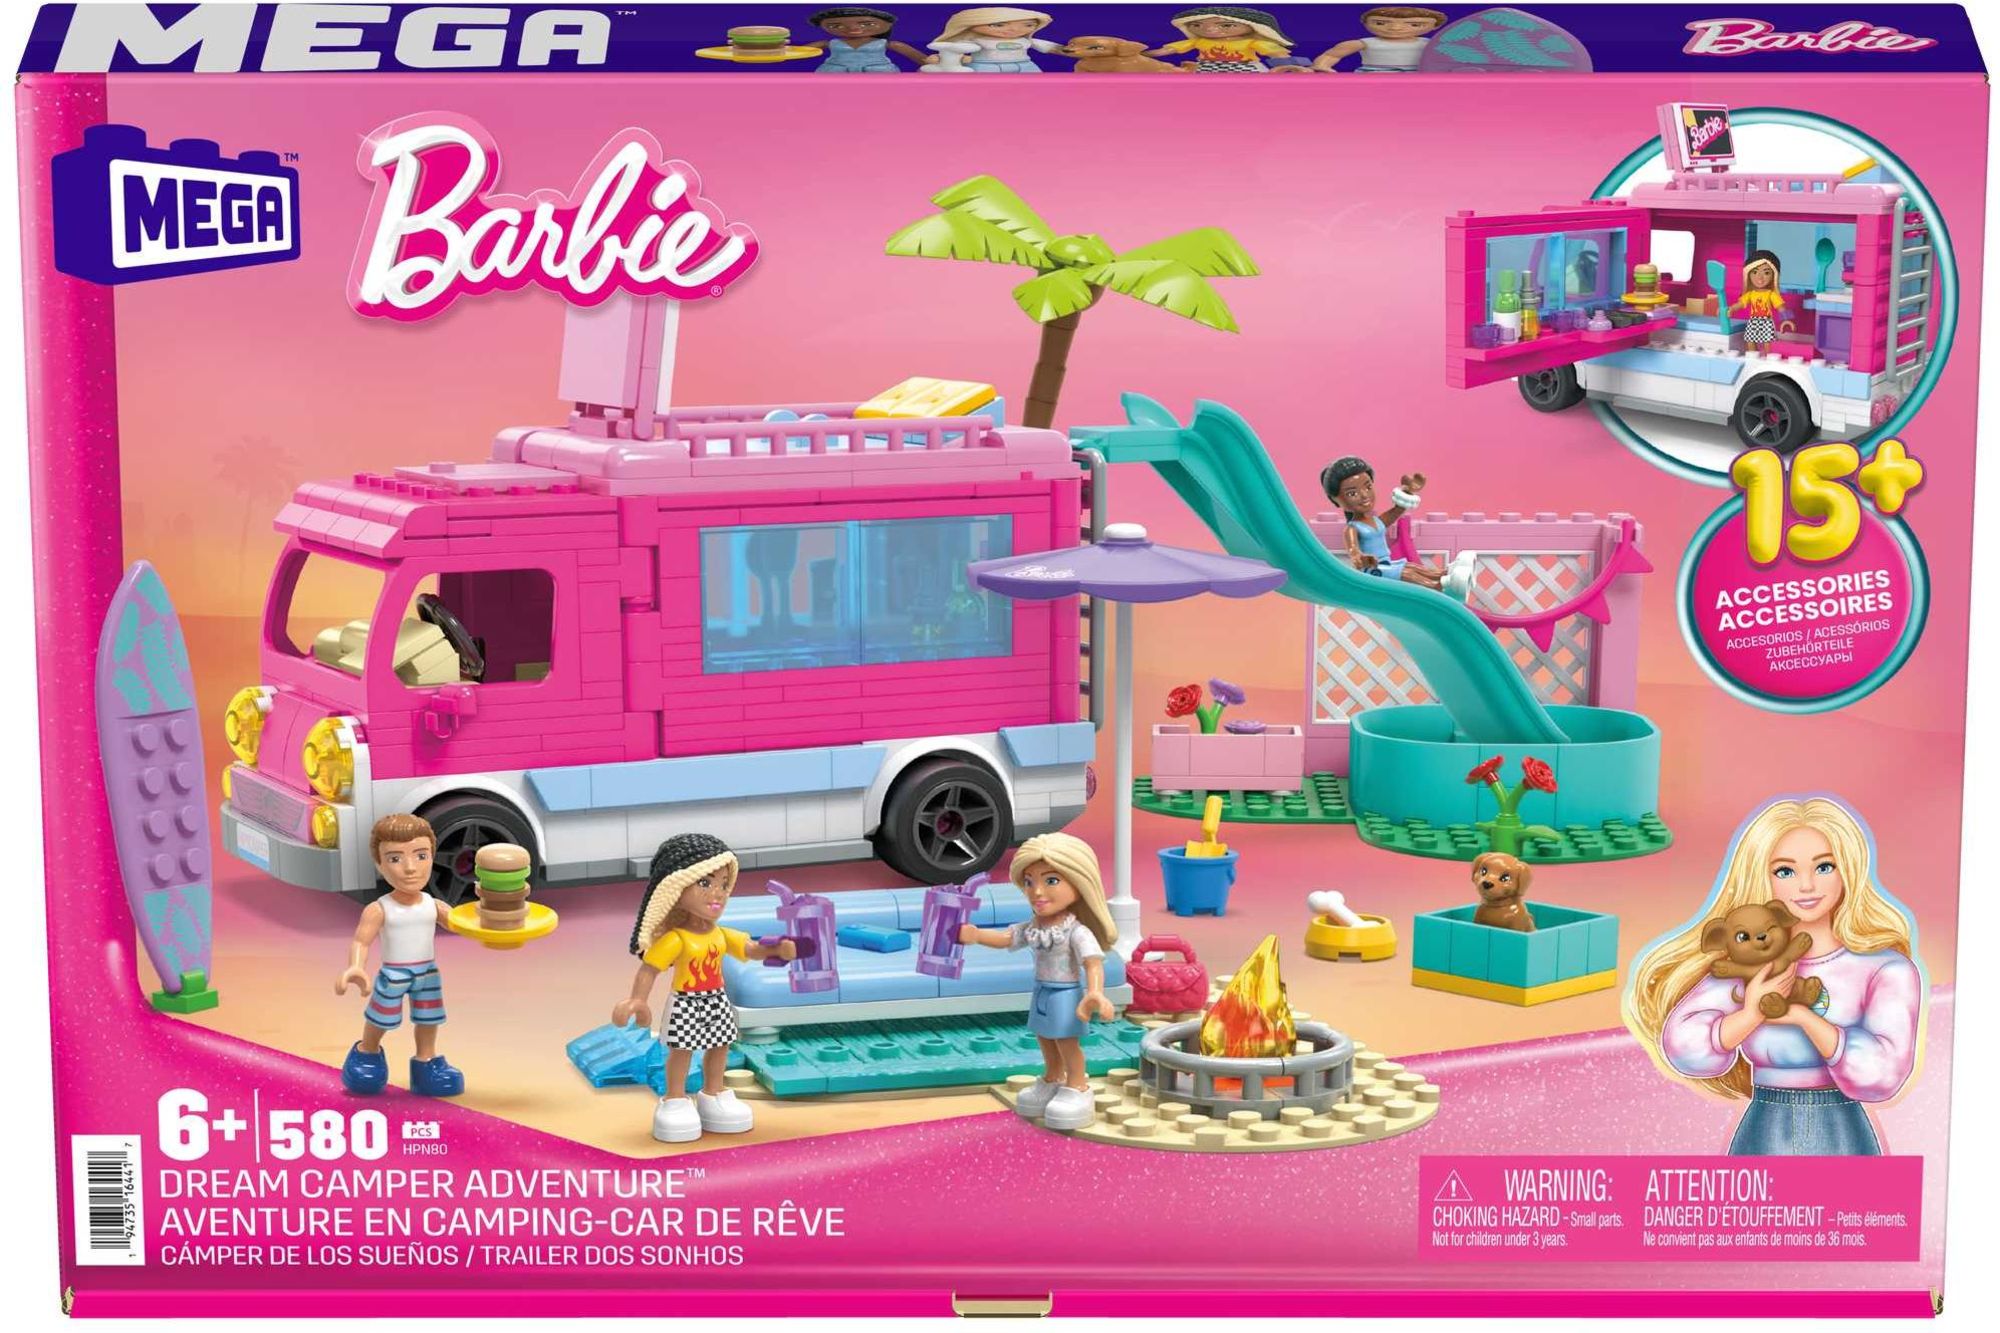 Bloks Spielwaren - Abenteuer-Camper\' - Barbie kaufen Mega Super